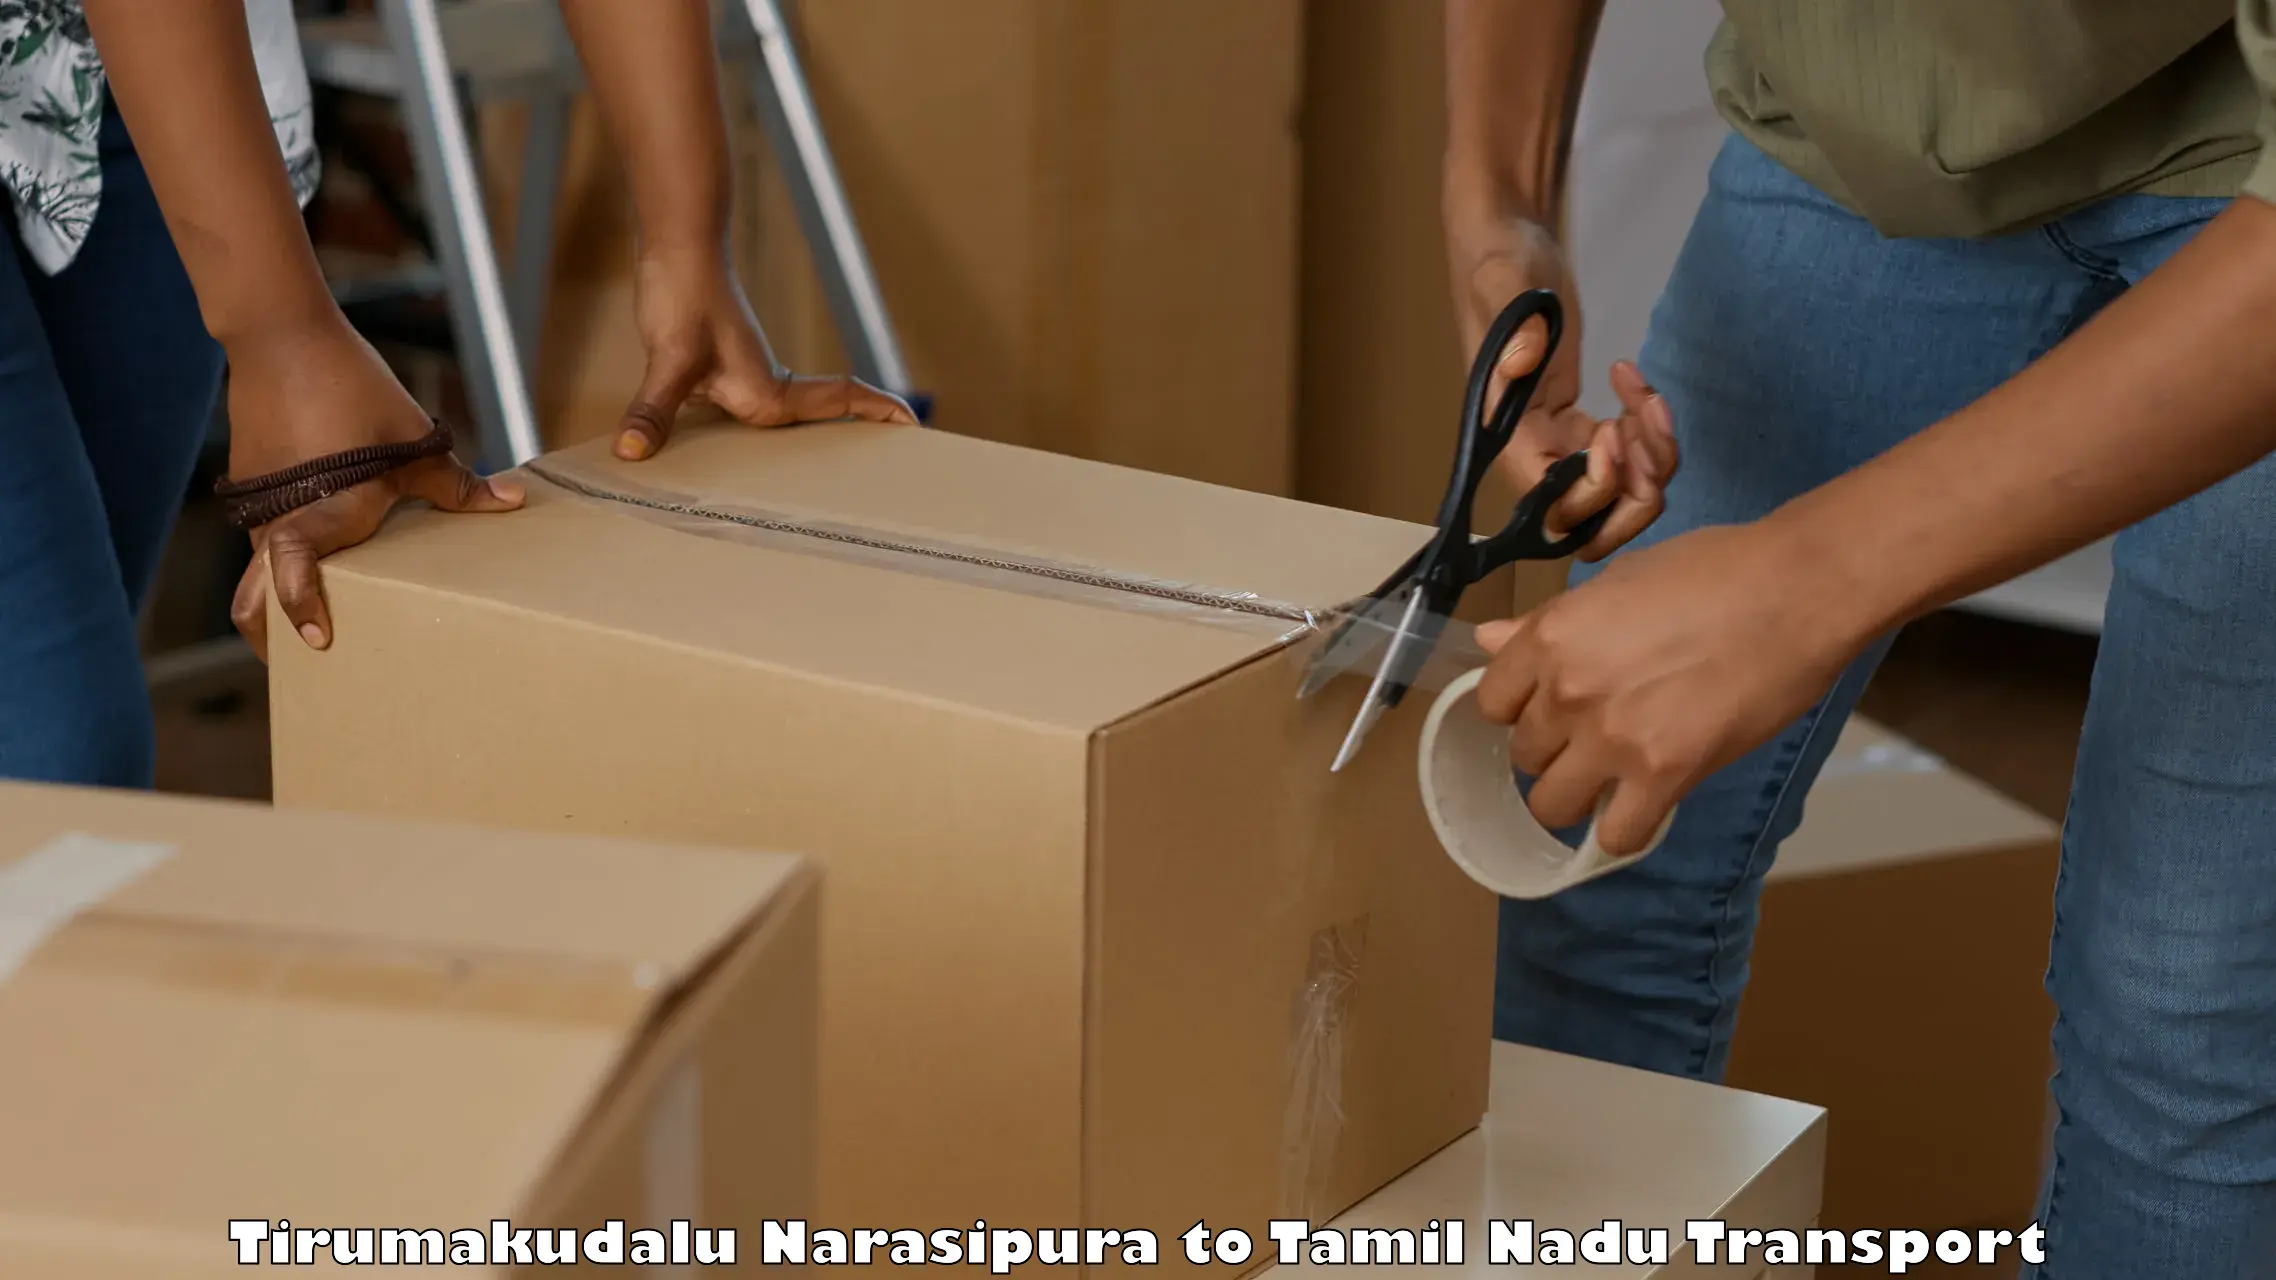 Material transport services Tirumakudalu Narasipura to Palani